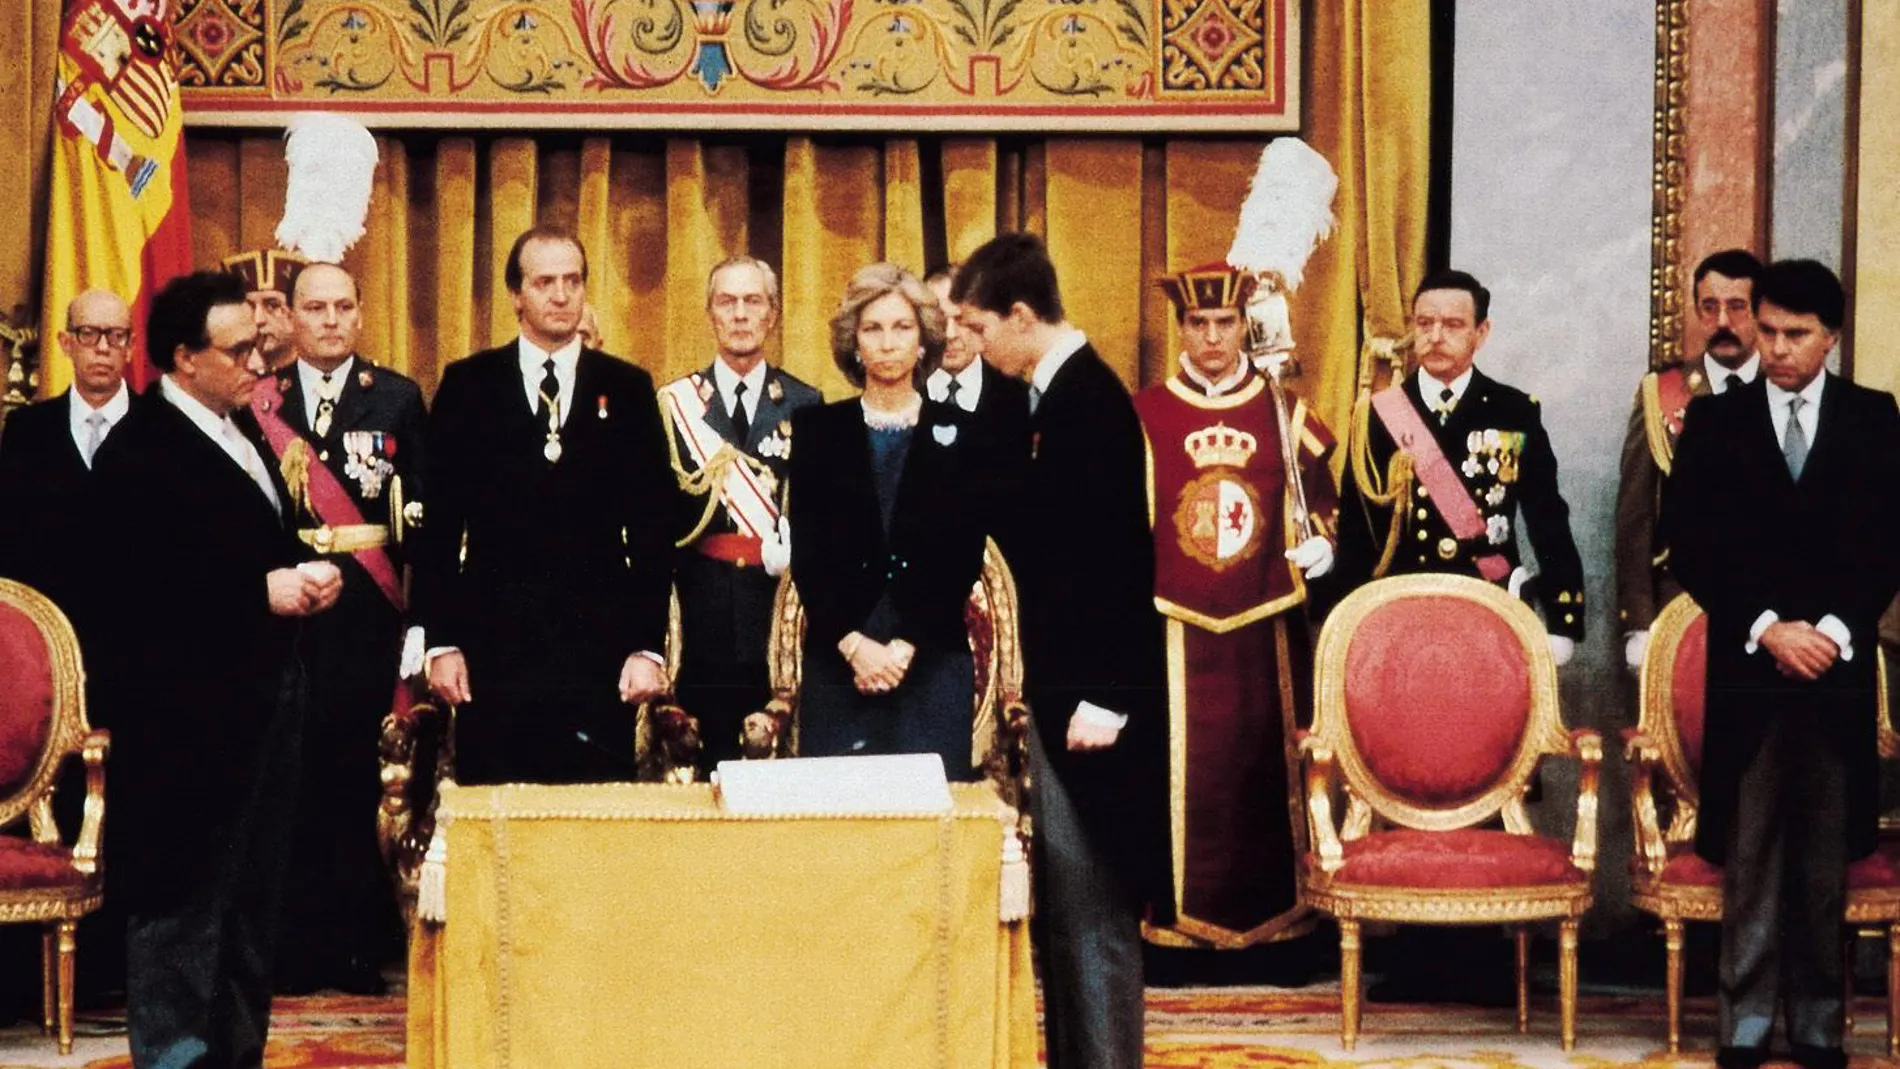 Juramento de la Constitución por el Príncipe Felipe en 1986